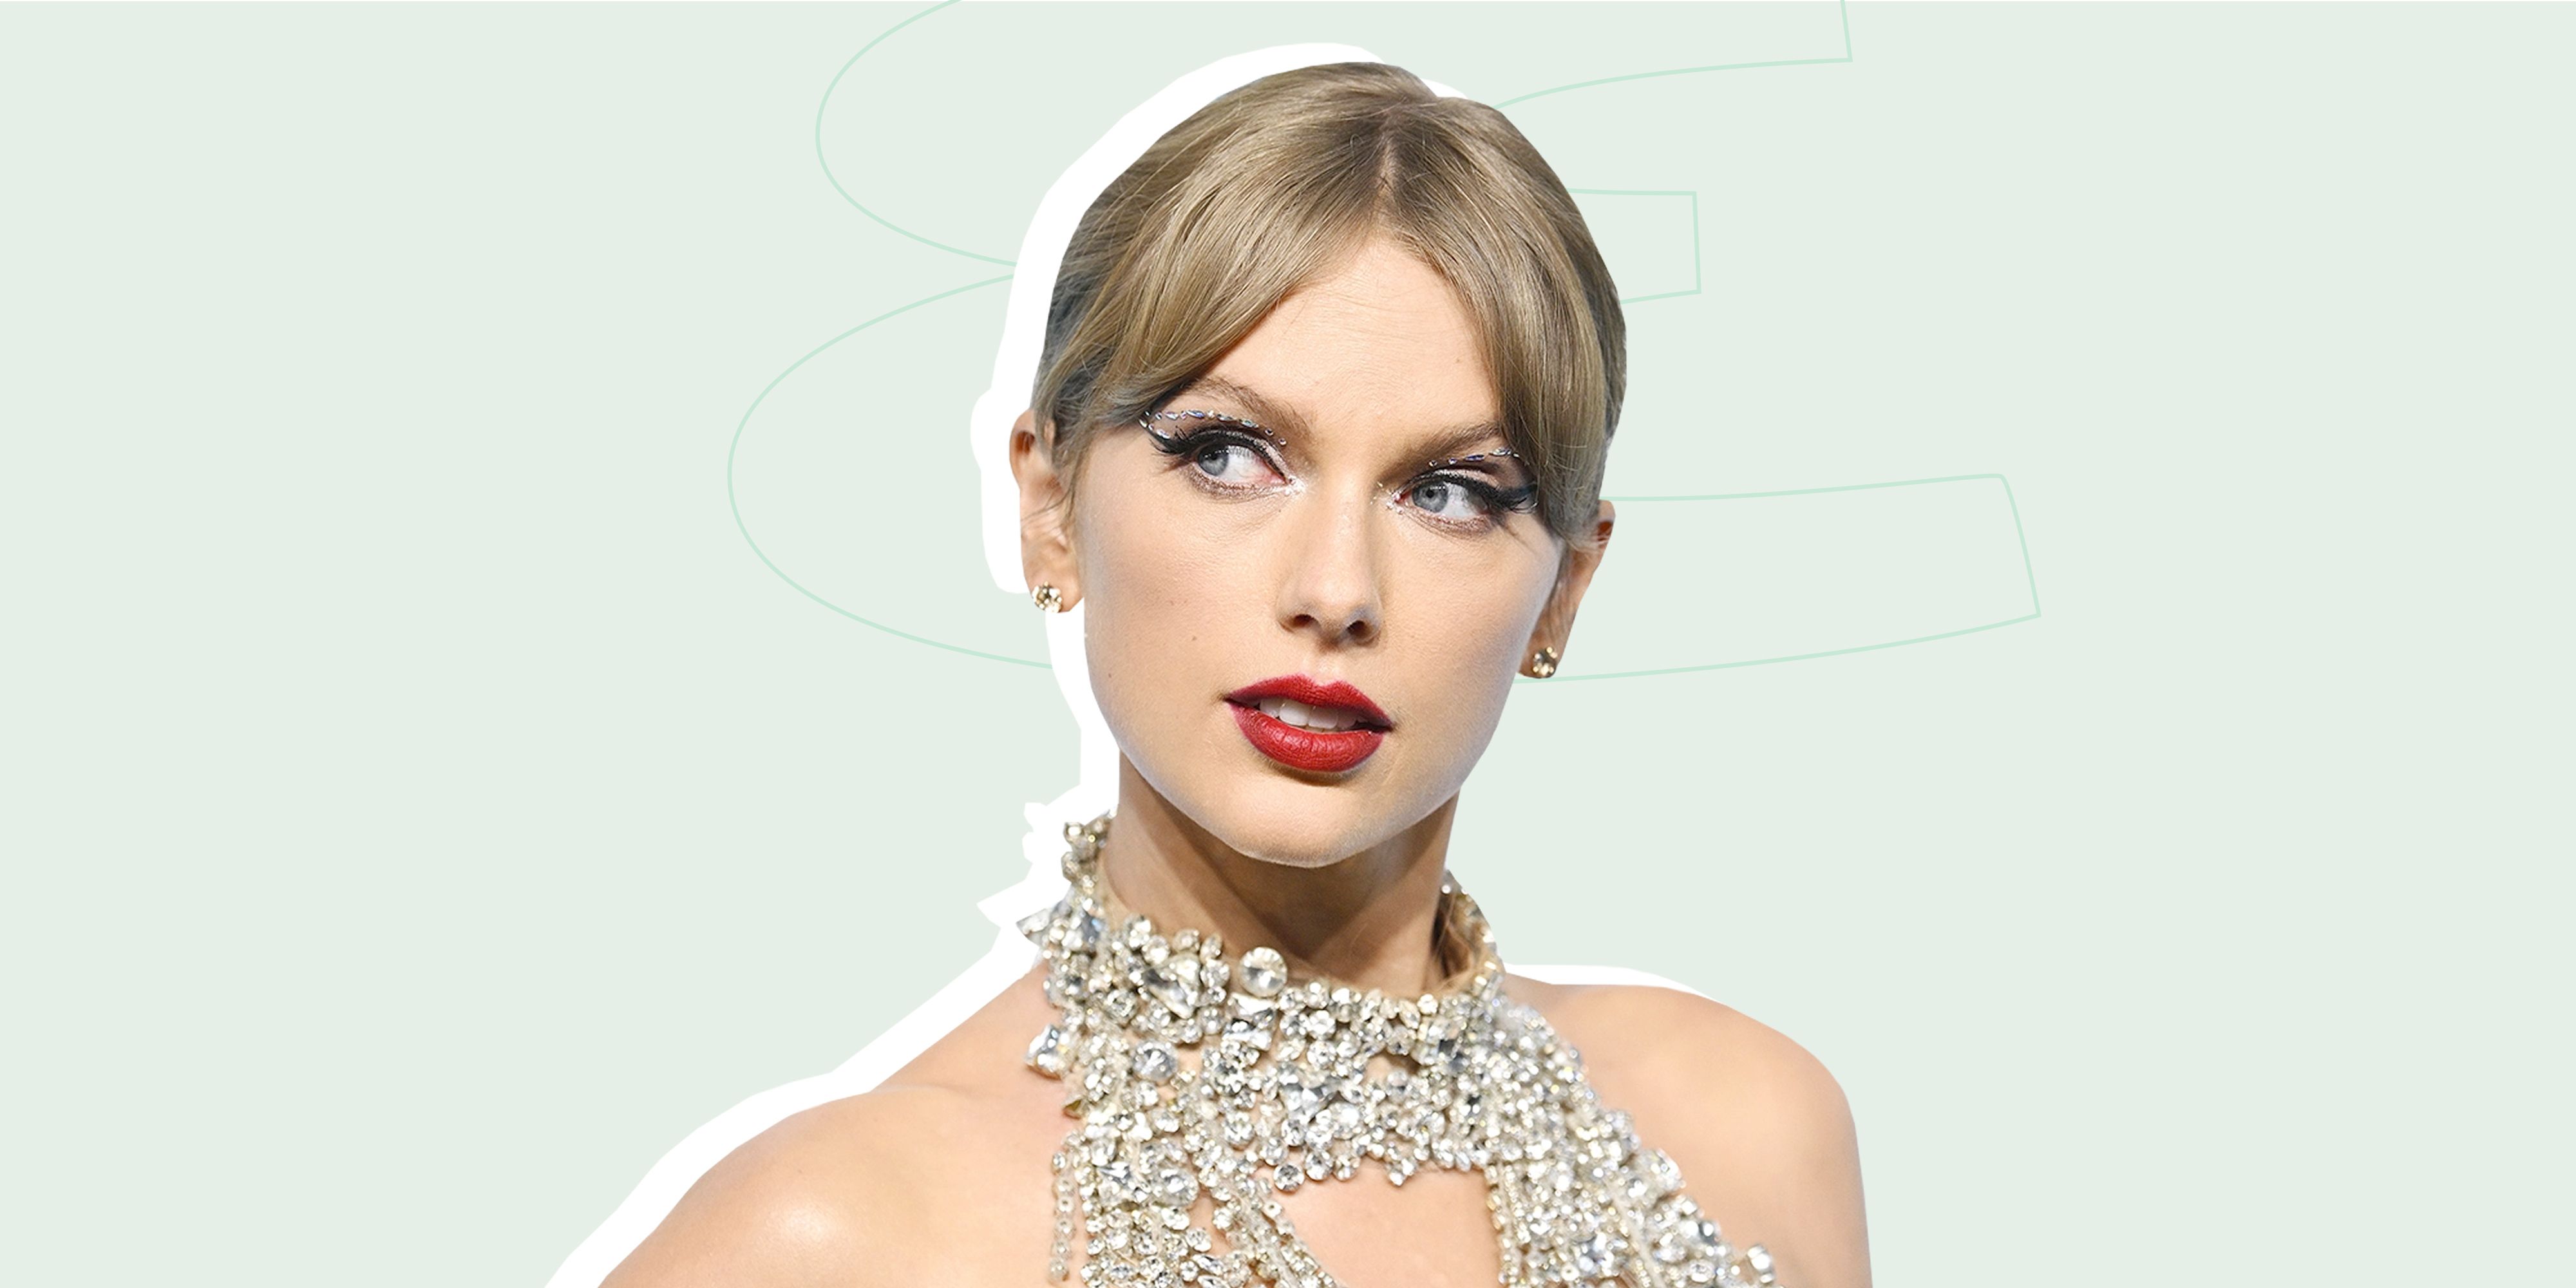 Todo lo que sabemos de Midnights, el nuevo álbum de Taylor Swift